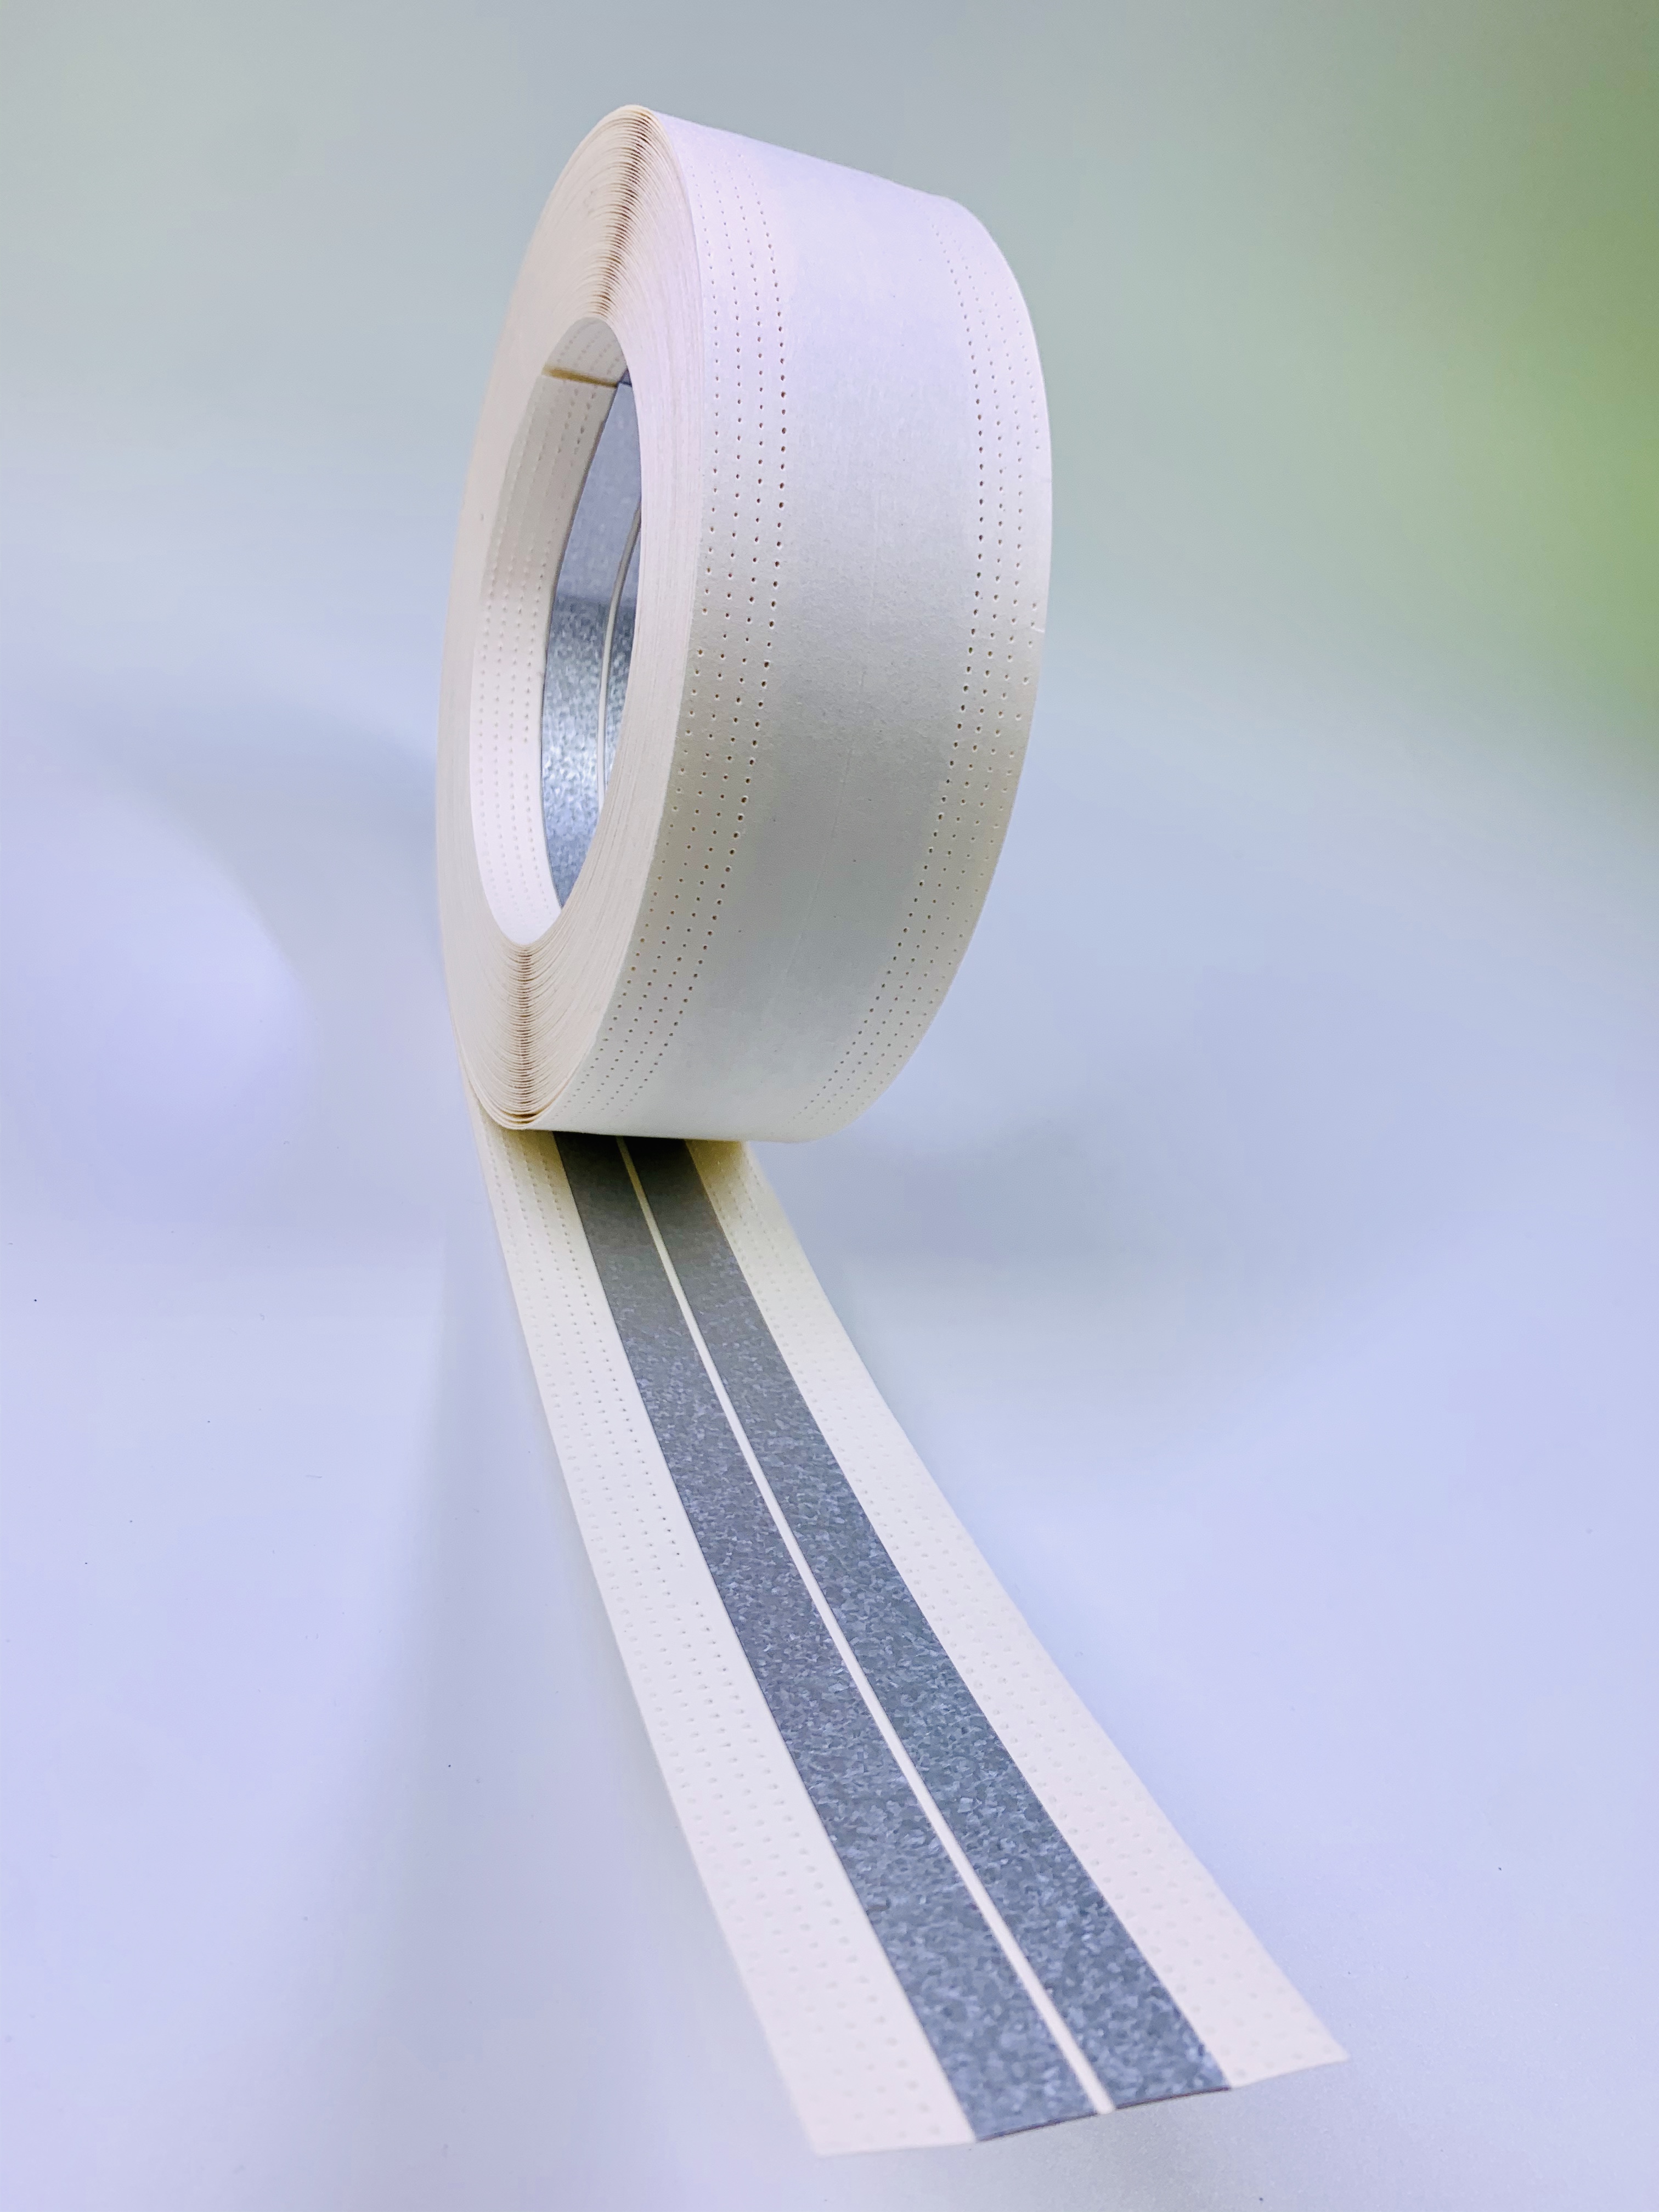 tape ແຈໂລຫະມີປະເພດຂອງວັດສະດຸສໍາລັບການເລືອກຂອງທ່ານ, ເຫຼັກ Galvanized, ອະລູມິນຽມ, ພາດສະຕິກ, ect.ມ້ວນດຽວ, ຕັດງ່າຍແລະຄໍາຮ້ອງສະຫມັກສໍາລັບການສ້ອມແປງອາຄານ ຂະຫນາດມ້ວນ: 5cm * 30m, 5.2cm * 30m